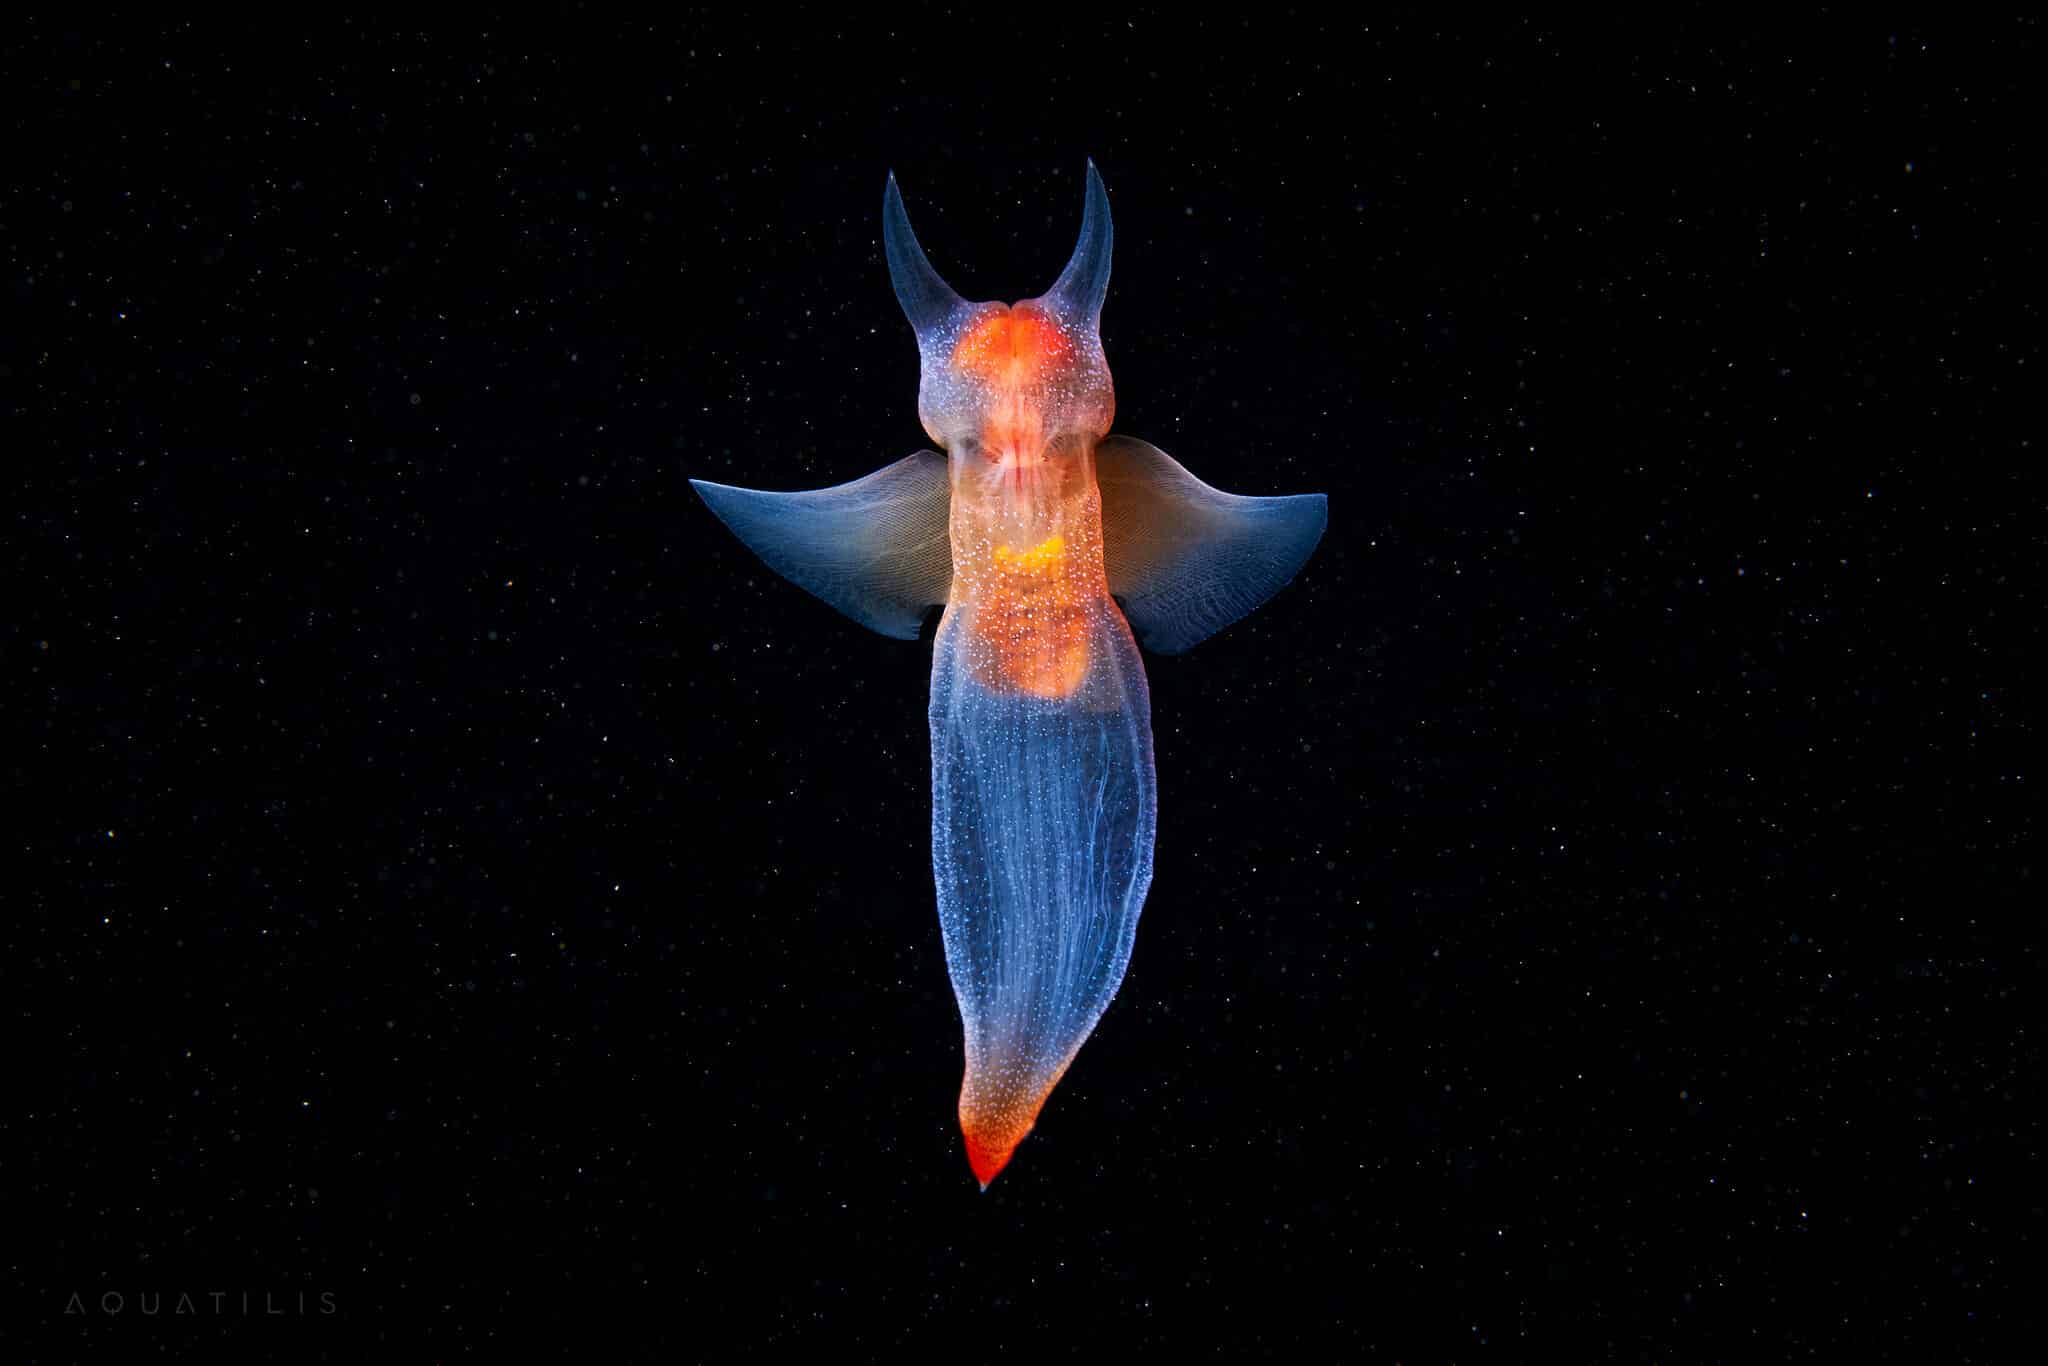 морской ангел, снимки удивительных существ из глубин мирового океана, фото 10